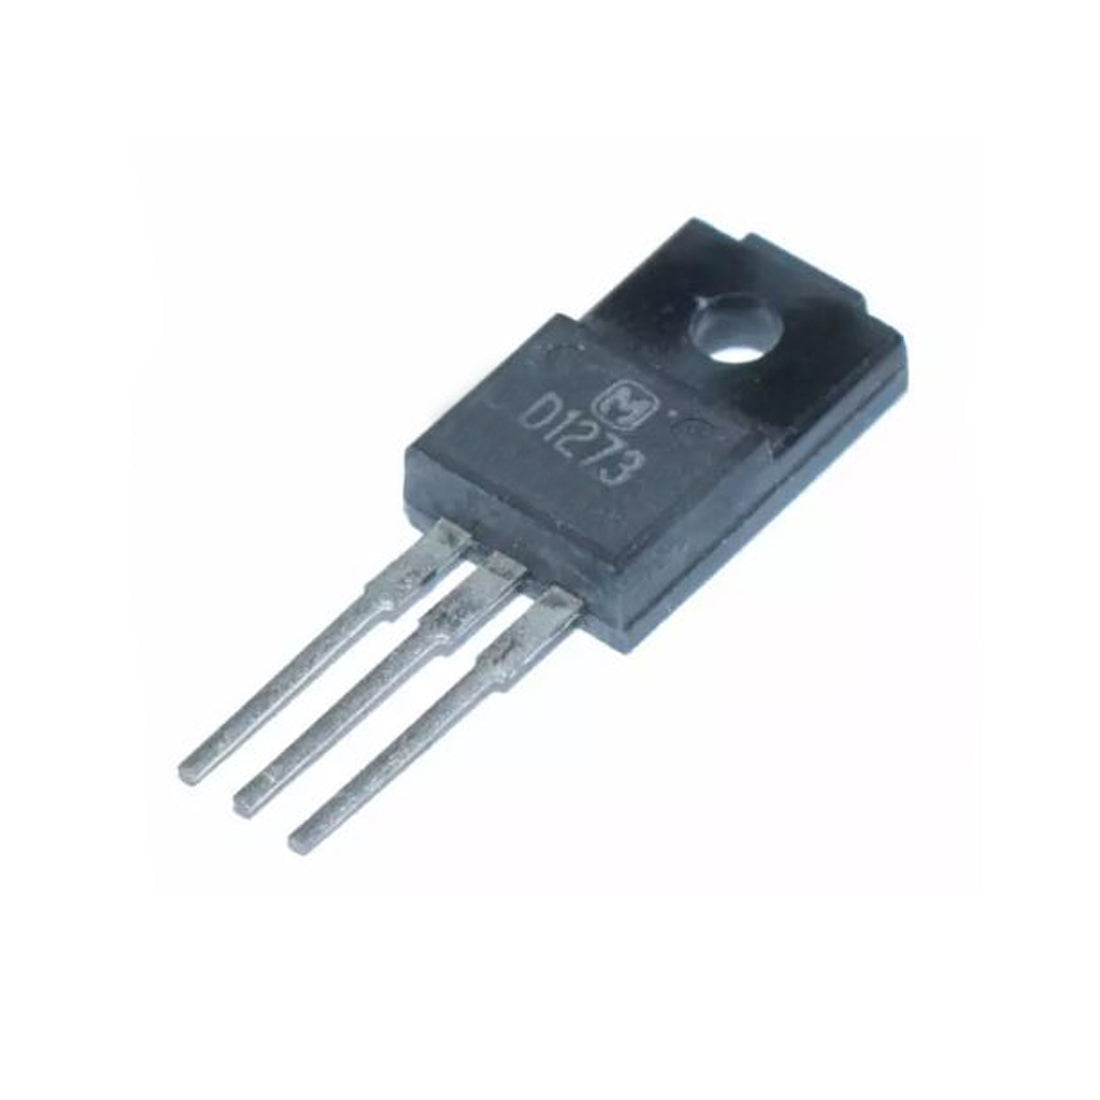 MATSUSHITA 2SD1273 componente elettronico, circuito integrato, 3 contatti